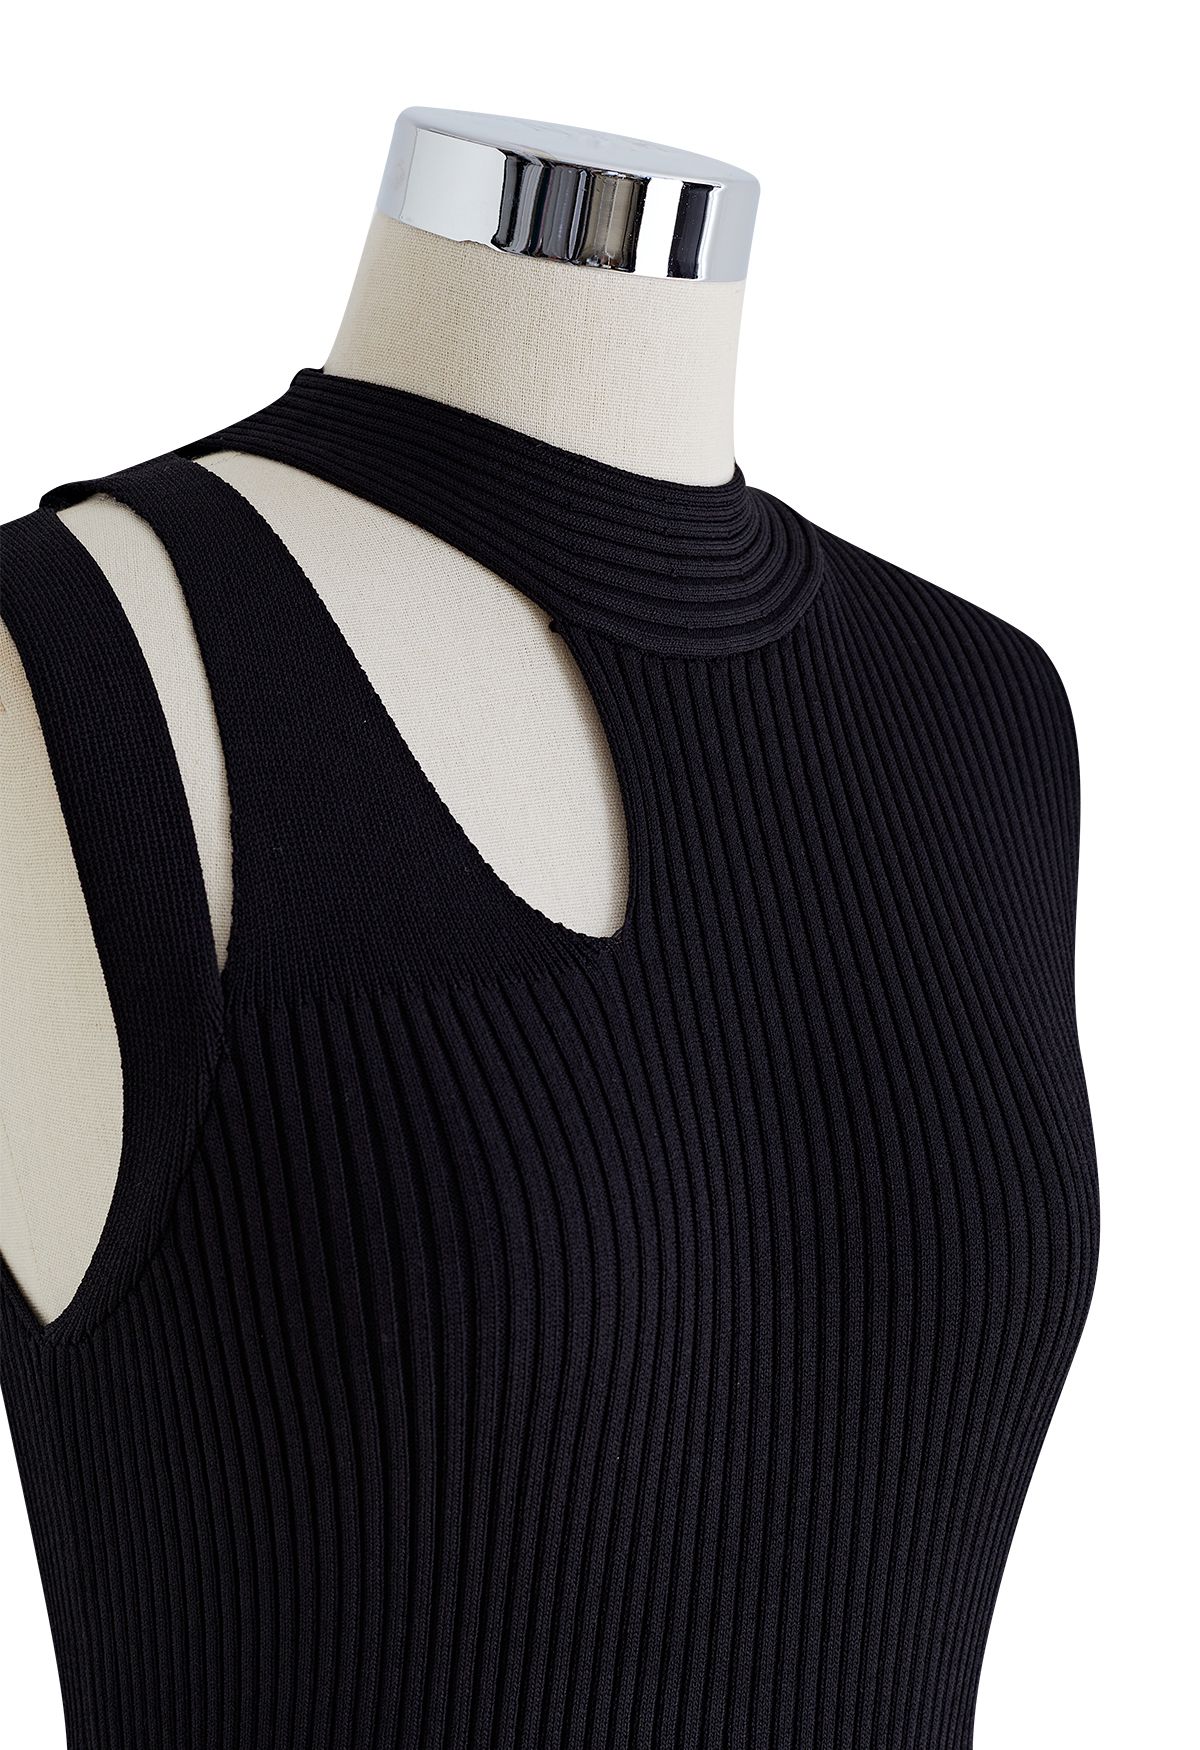 Cutout Neckline Knit Spliced Dress in Black